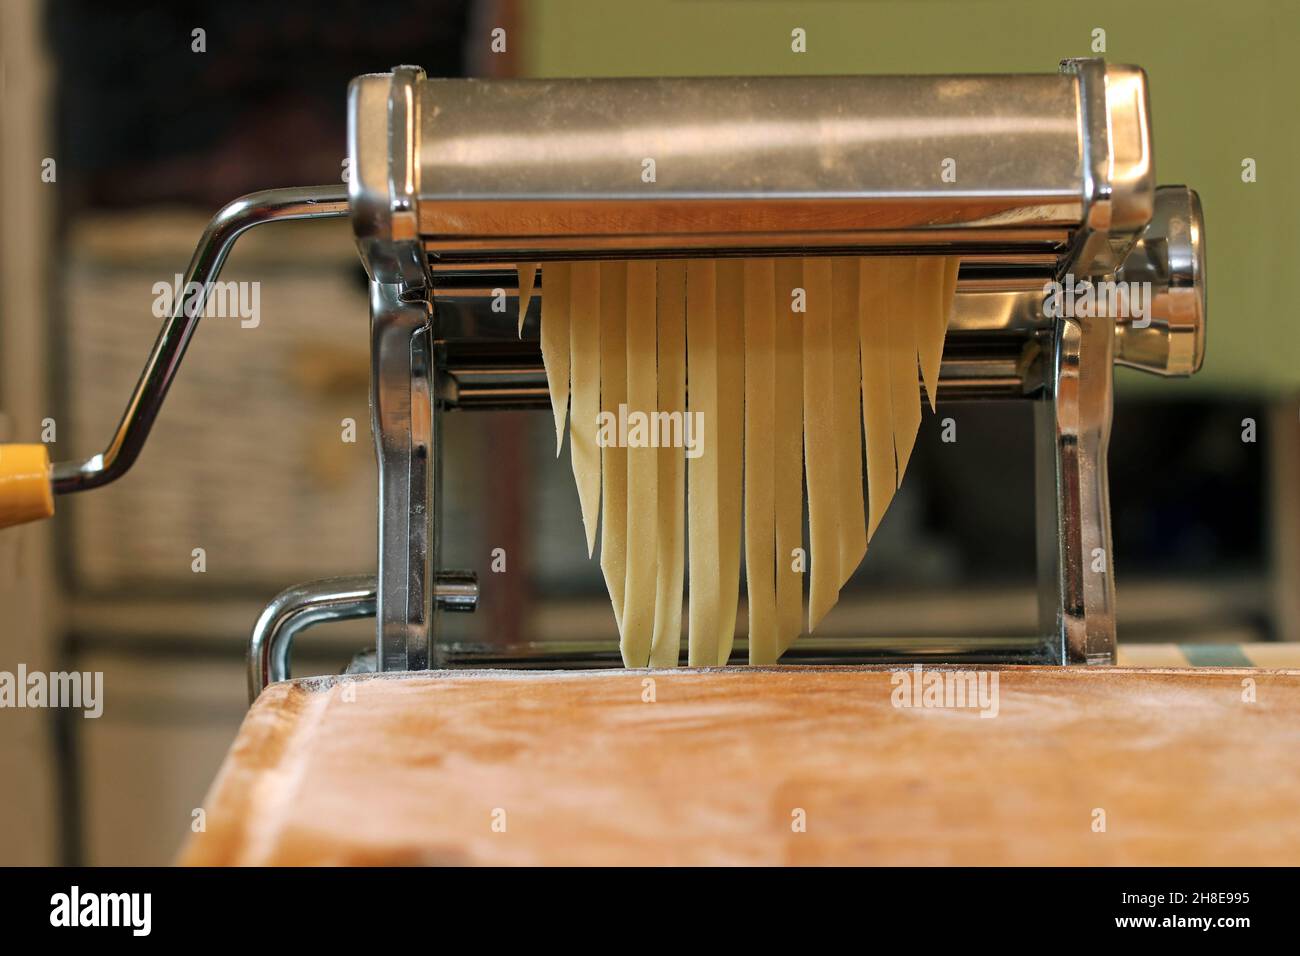 https://c8.alamy.com/comp/2H8E995/pasta-machine-to-prepare-spaghetti-close-up-view-homemade-egg-pasta-italian-cuisine-2H8E995.jpg